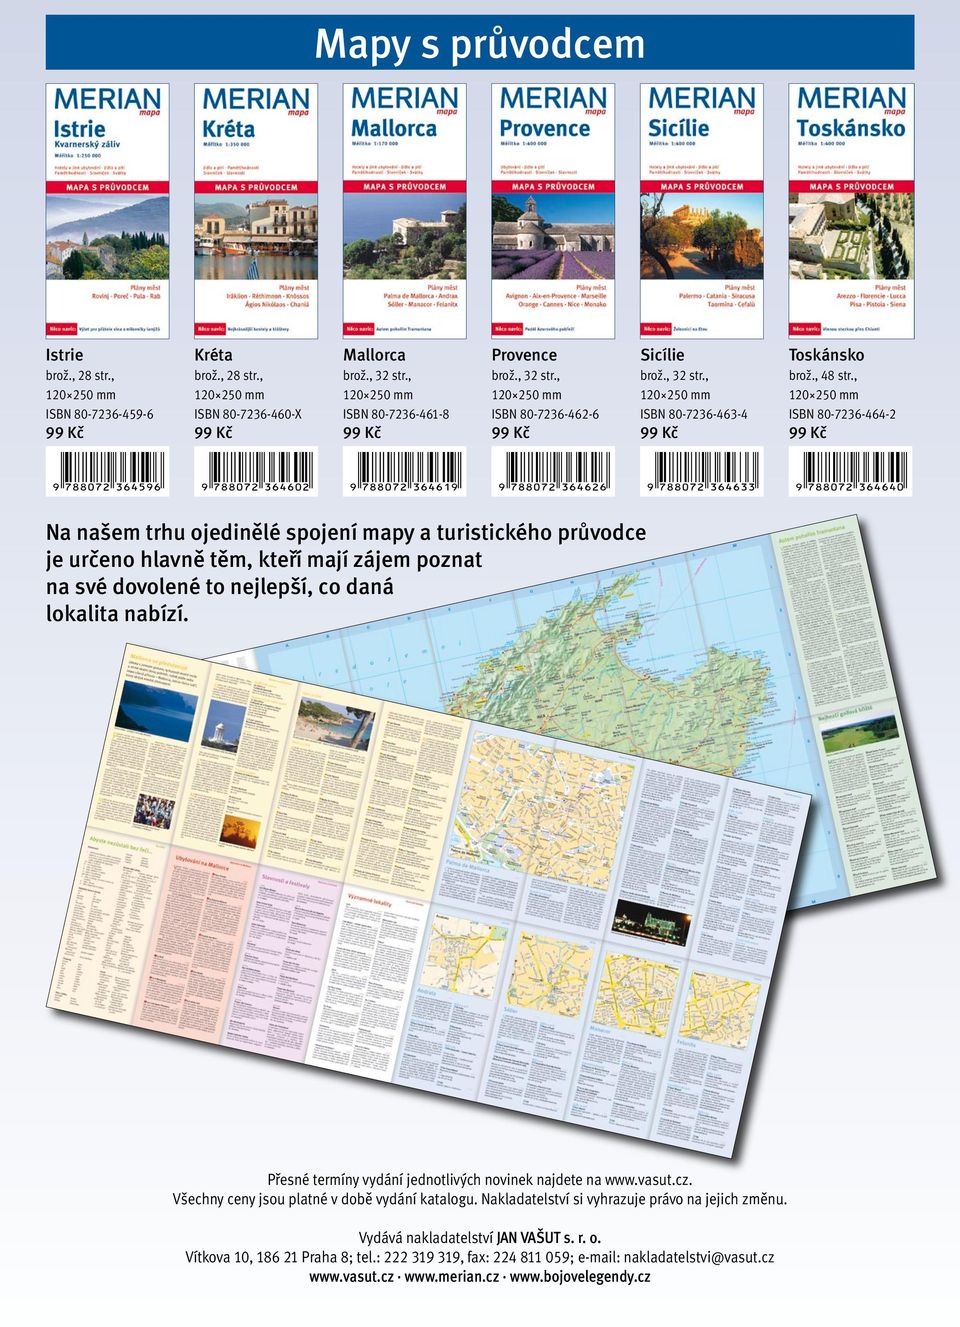 , ISBN 80 7236 464 2 Na našem trhu ojedinělé spojení mapy a turistického průvodce je určeno hlavně těm, kteří mají zájem poznat na své dovolené to nejlepší, co daná lokalita nabízí.